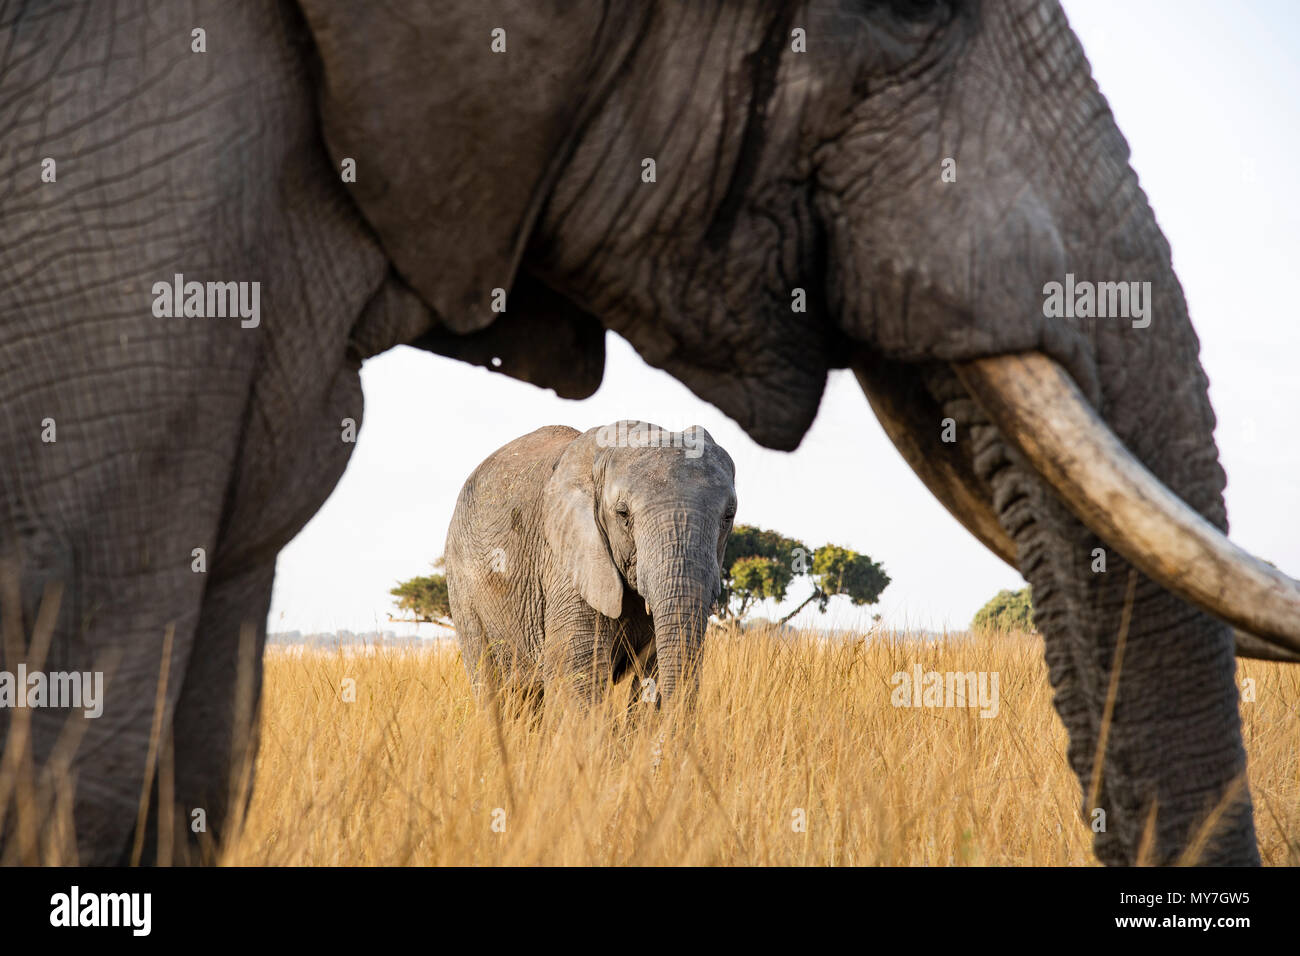 El elefante africano (Loxodonta africana), la conservación de la vida silvestre, Imire Zimbabwe Foto de stock